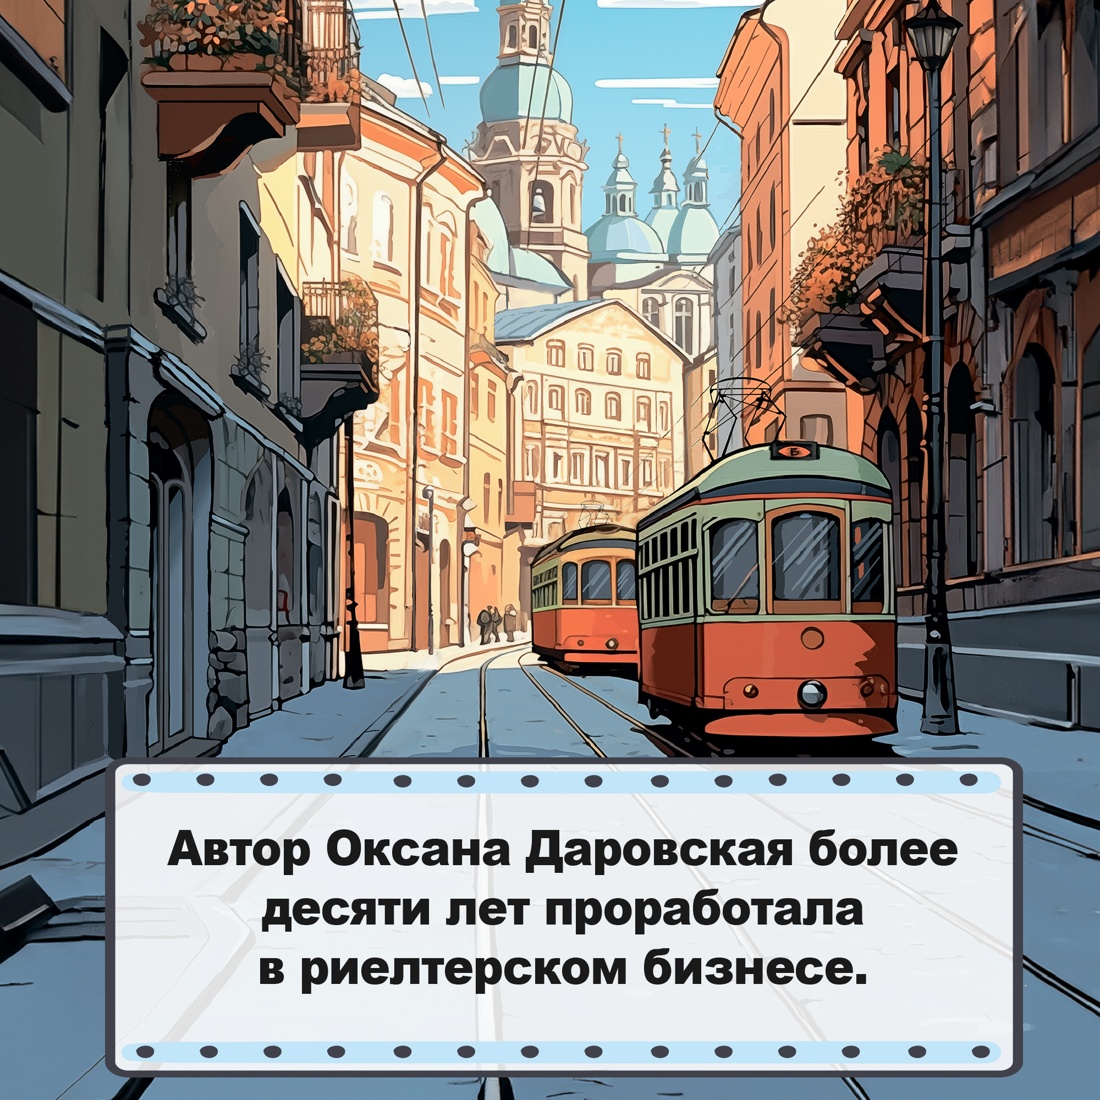 Промо материал к книге "Москва. Квартирная симфония" №2